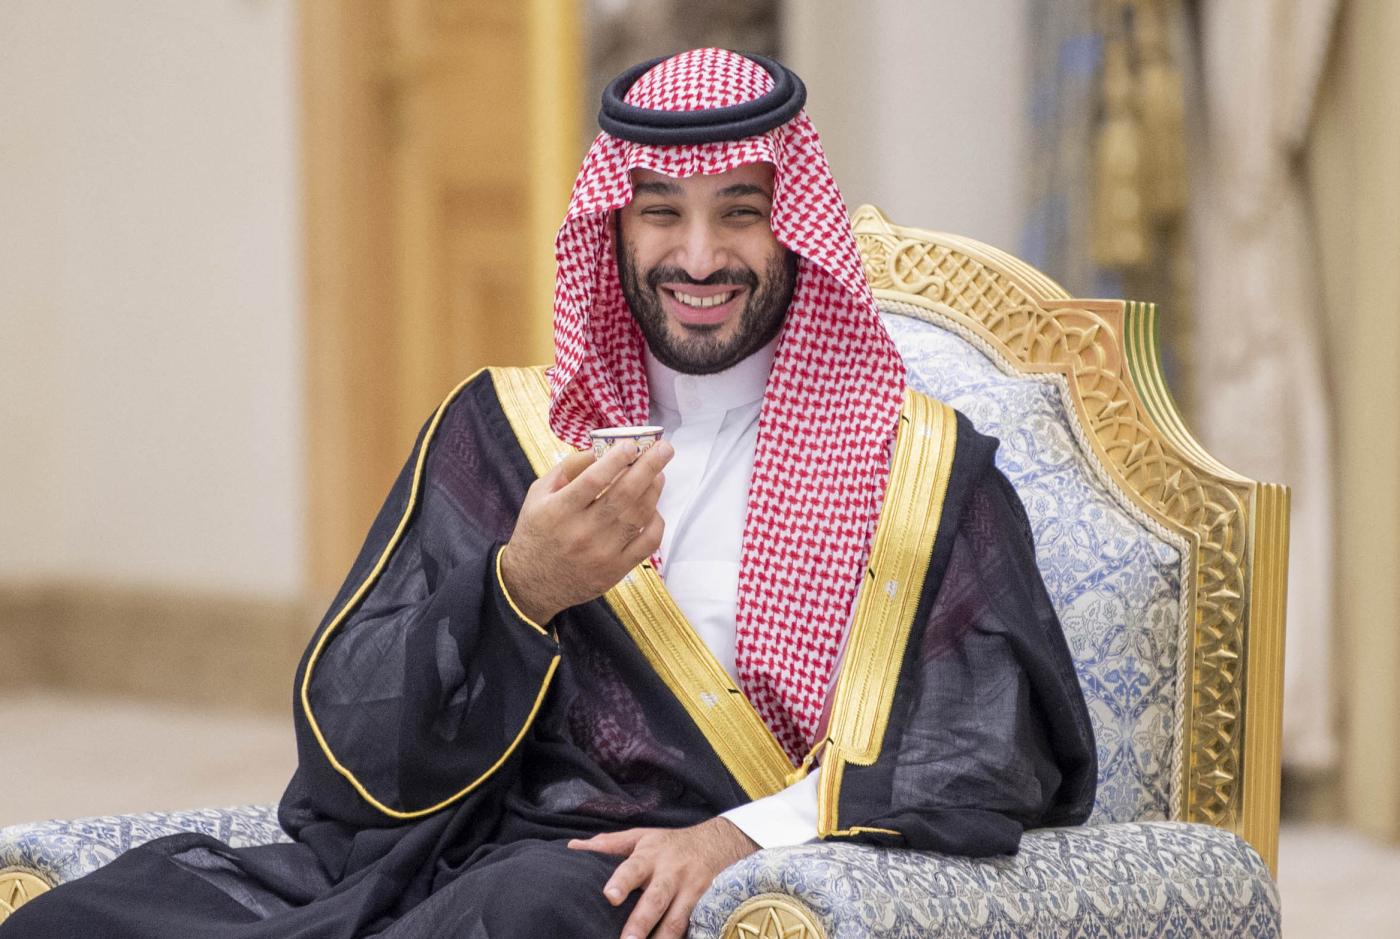 Ο διάδοχος της Σαουδικής Αραβίας Μοχάμεντ μπιν Σαλμάν Αλ Σαούντ, στον οποίο φέρεται να ανήκει το έργο